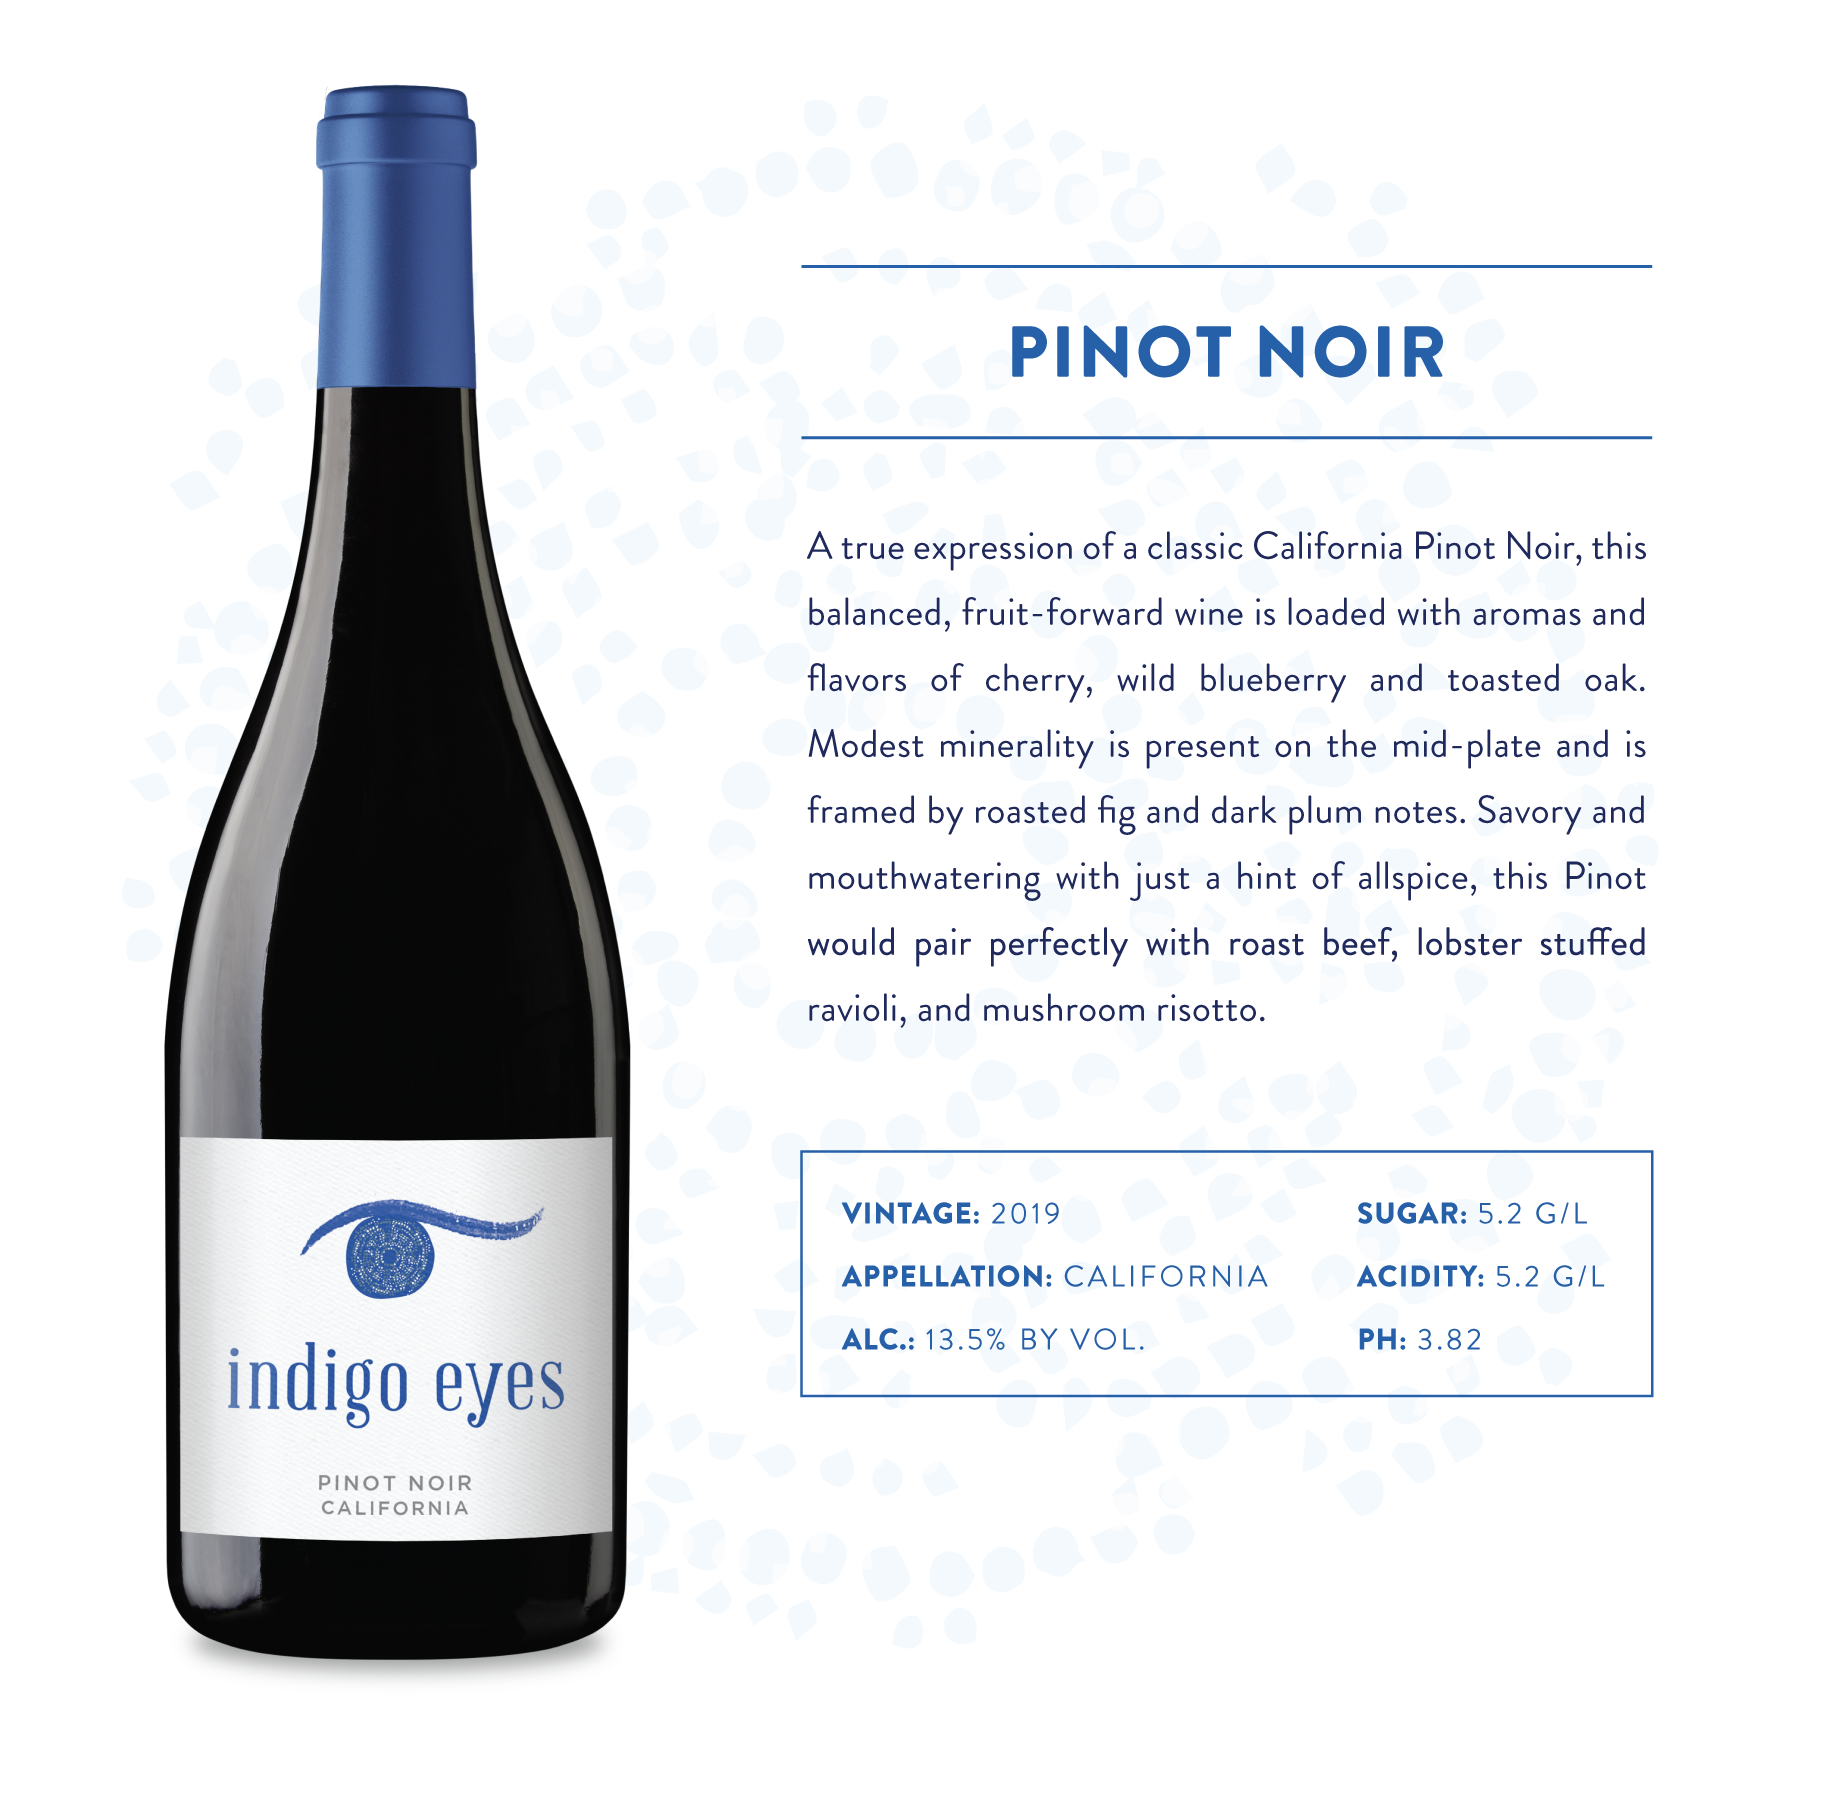 Indigo Eyes Pinot Noir Product Informarion